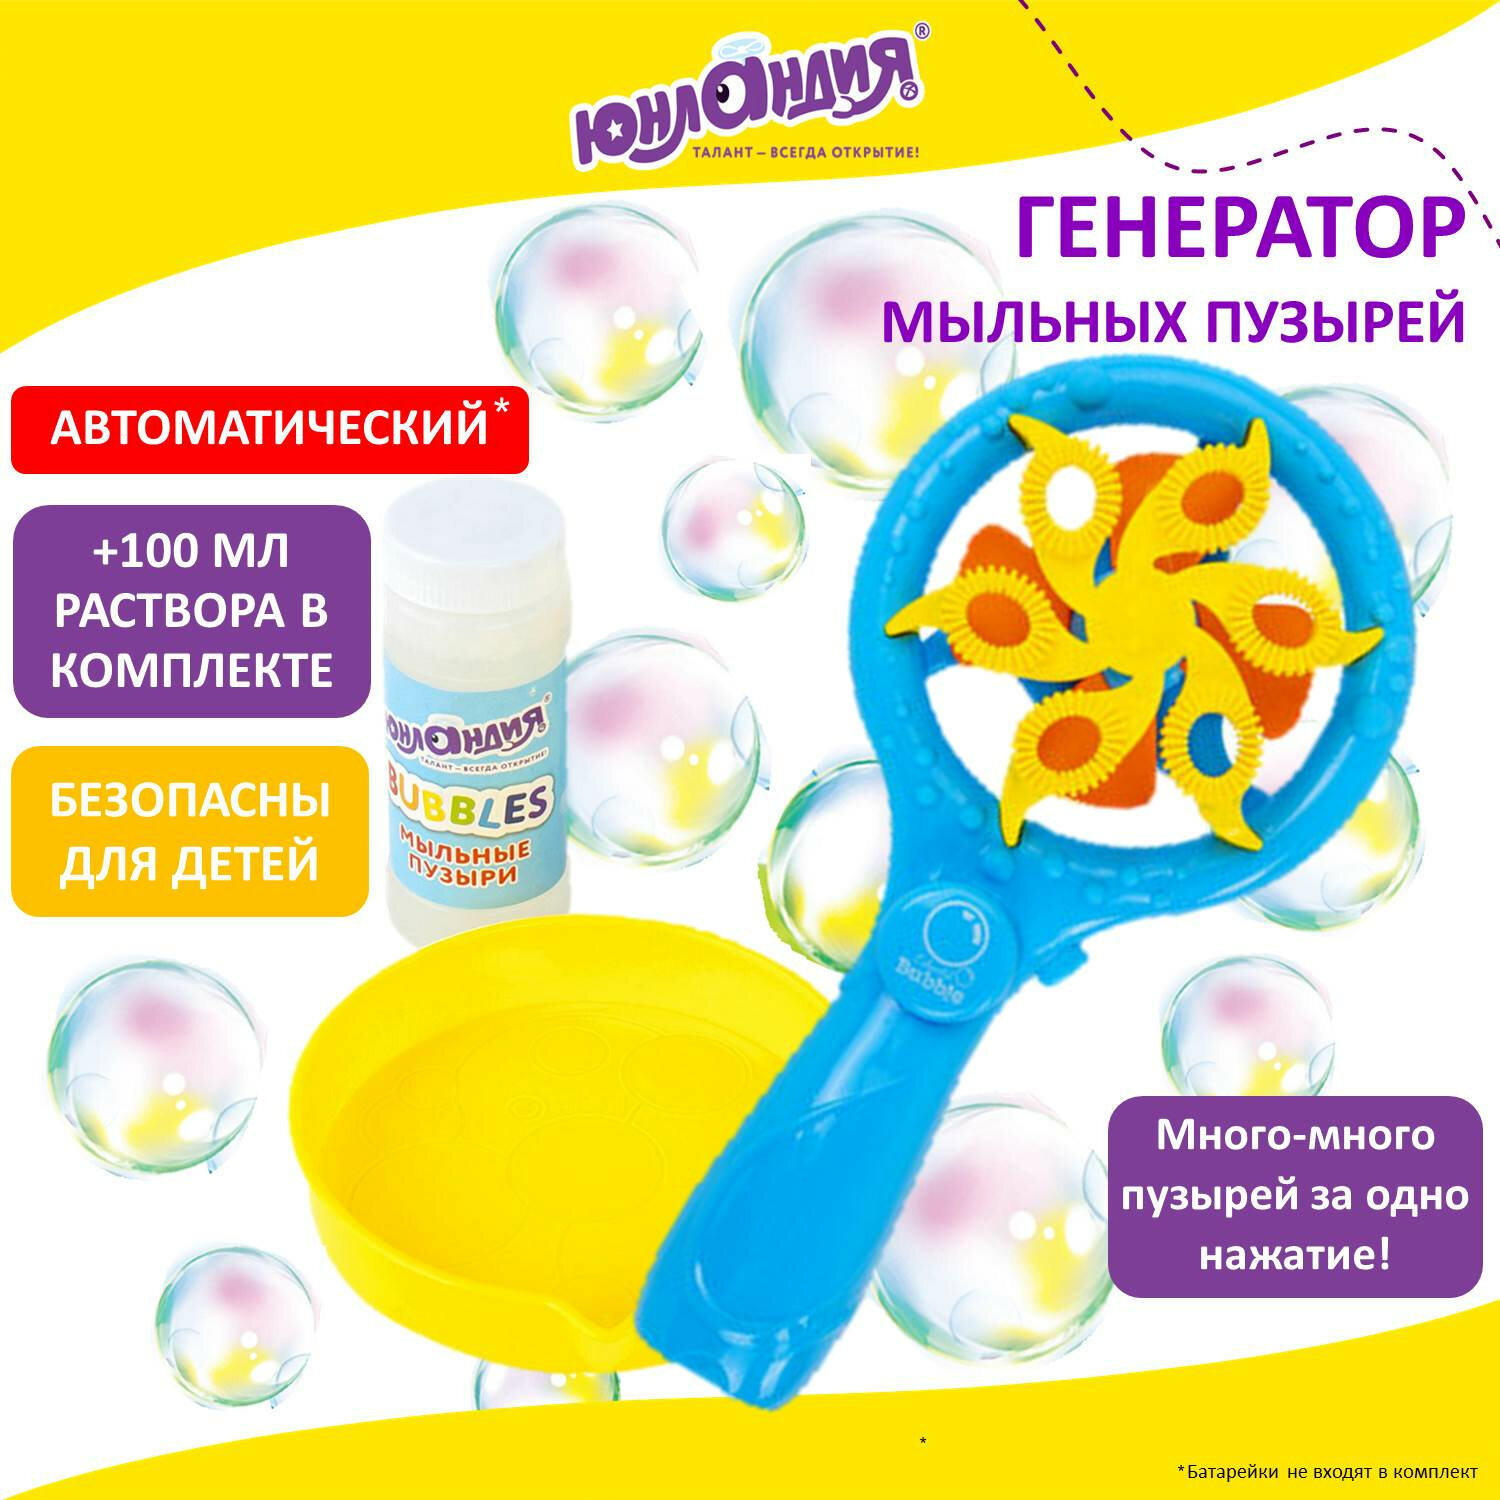 Купить жидкость для генератора мыльных пузырей в магазинах POP-MUSIC в Москве и Санкт-Петербурге